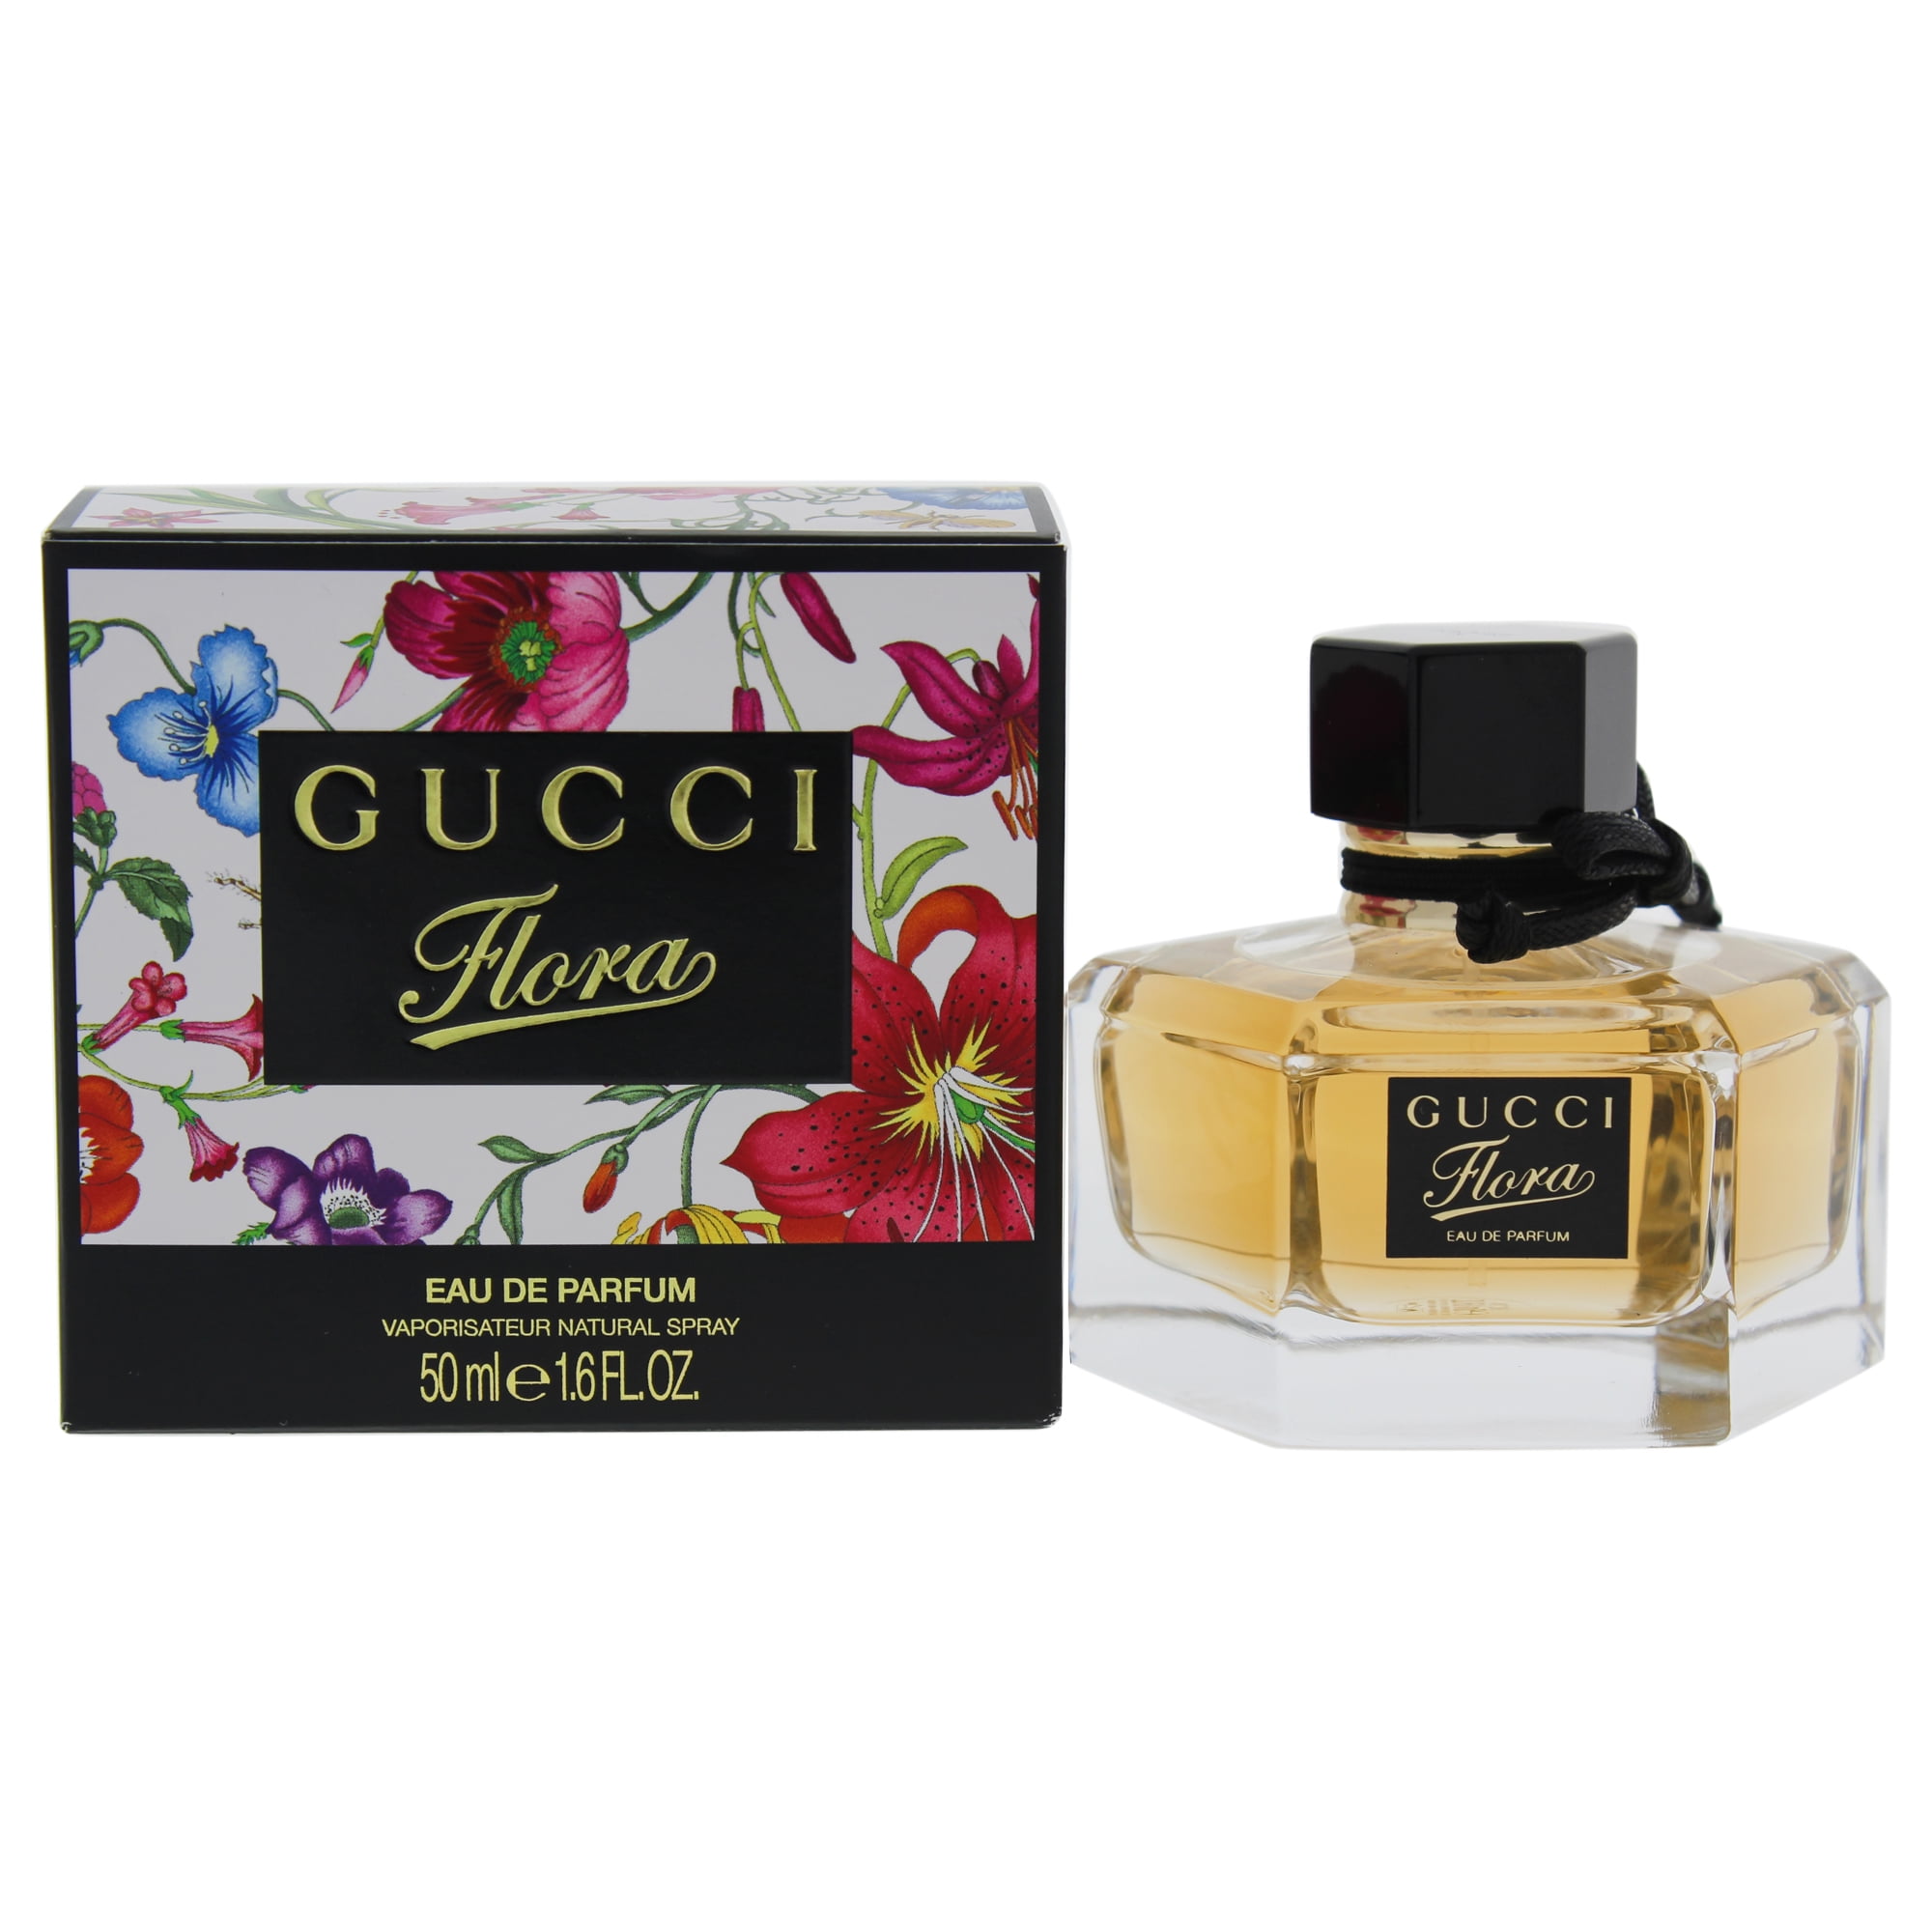 Under ~ bestemt Army Gucci Flora Eau de Parfum, Perfume for Women, 1.7 Oz - Walmart.com